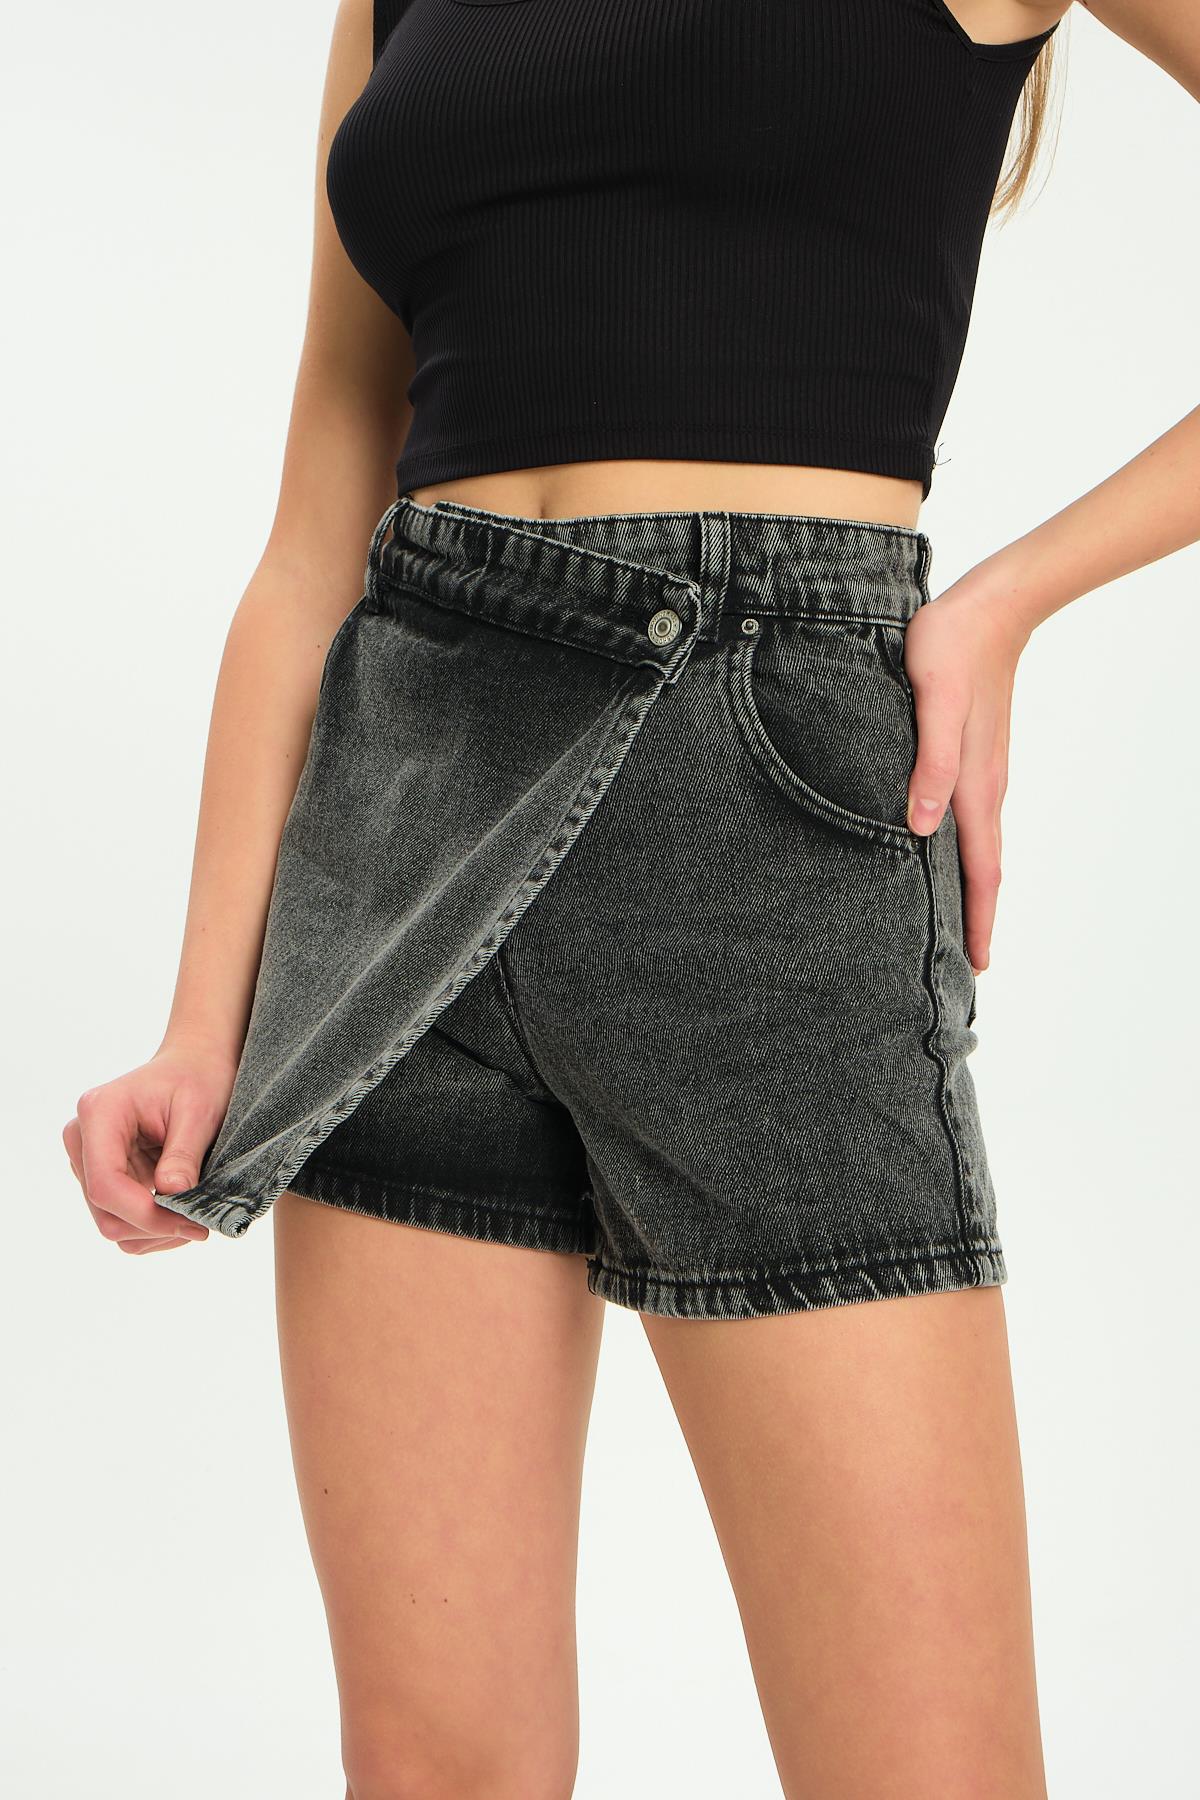 Single button, zipper denim shorts jeans women's skirt